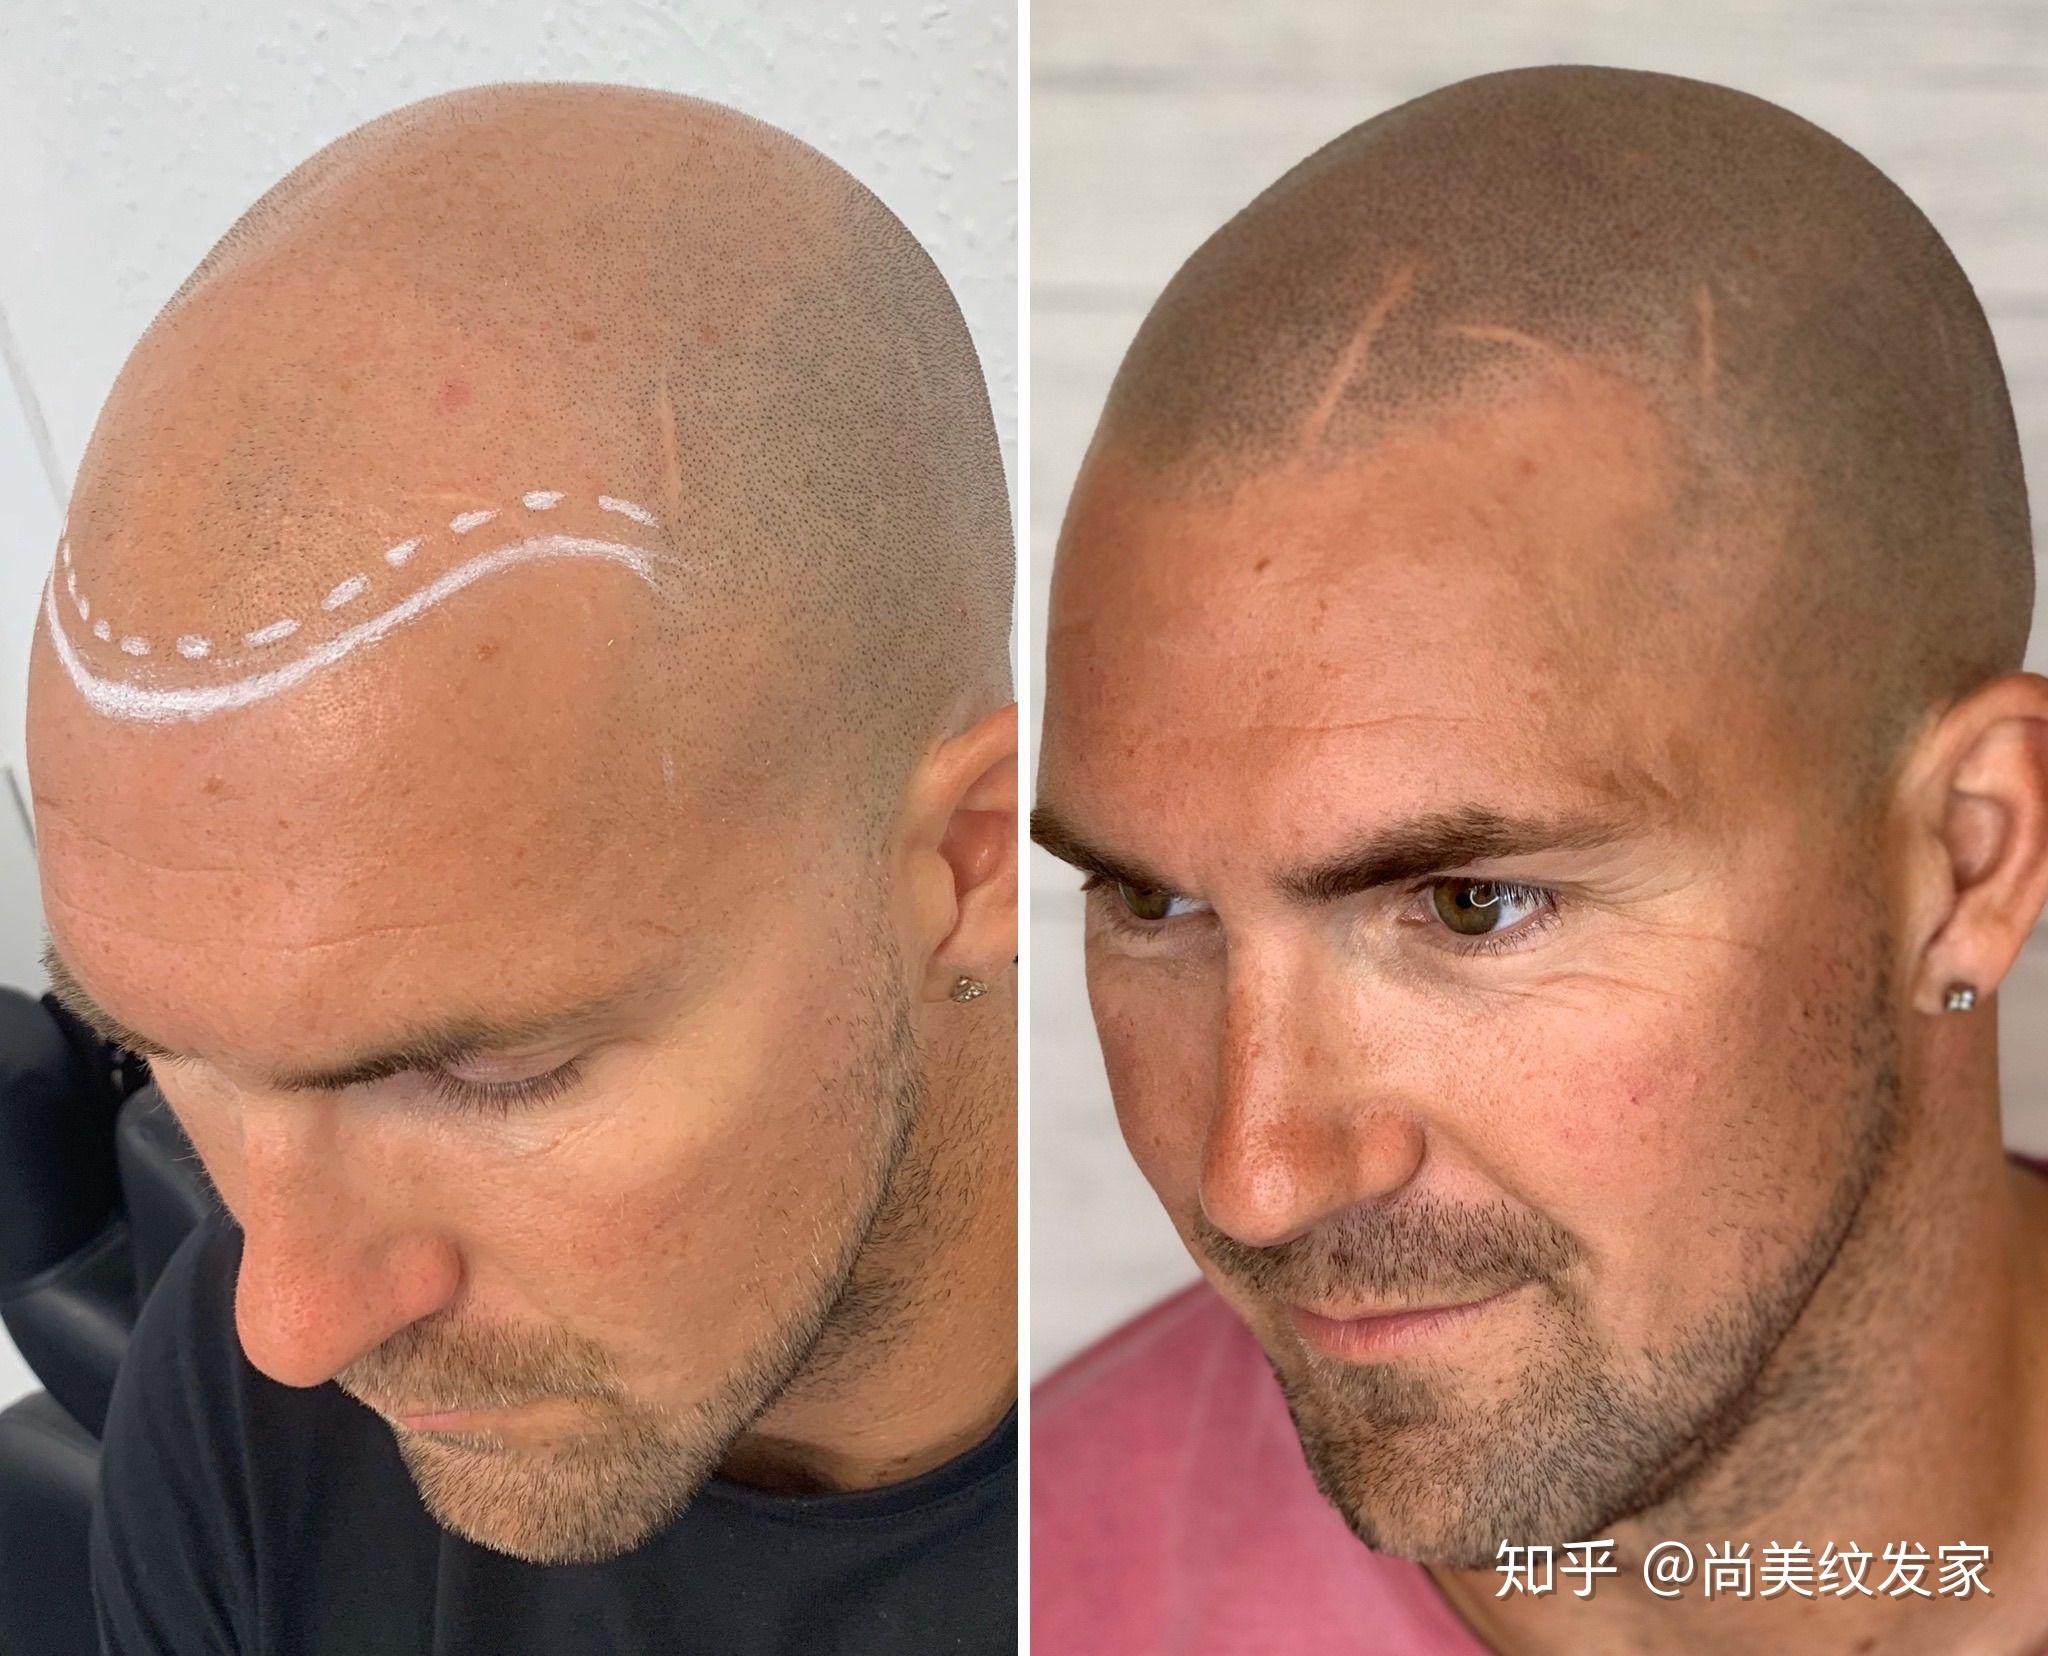 纹发不是制止脱发,而是一种头皮伪装的新兴技术,让